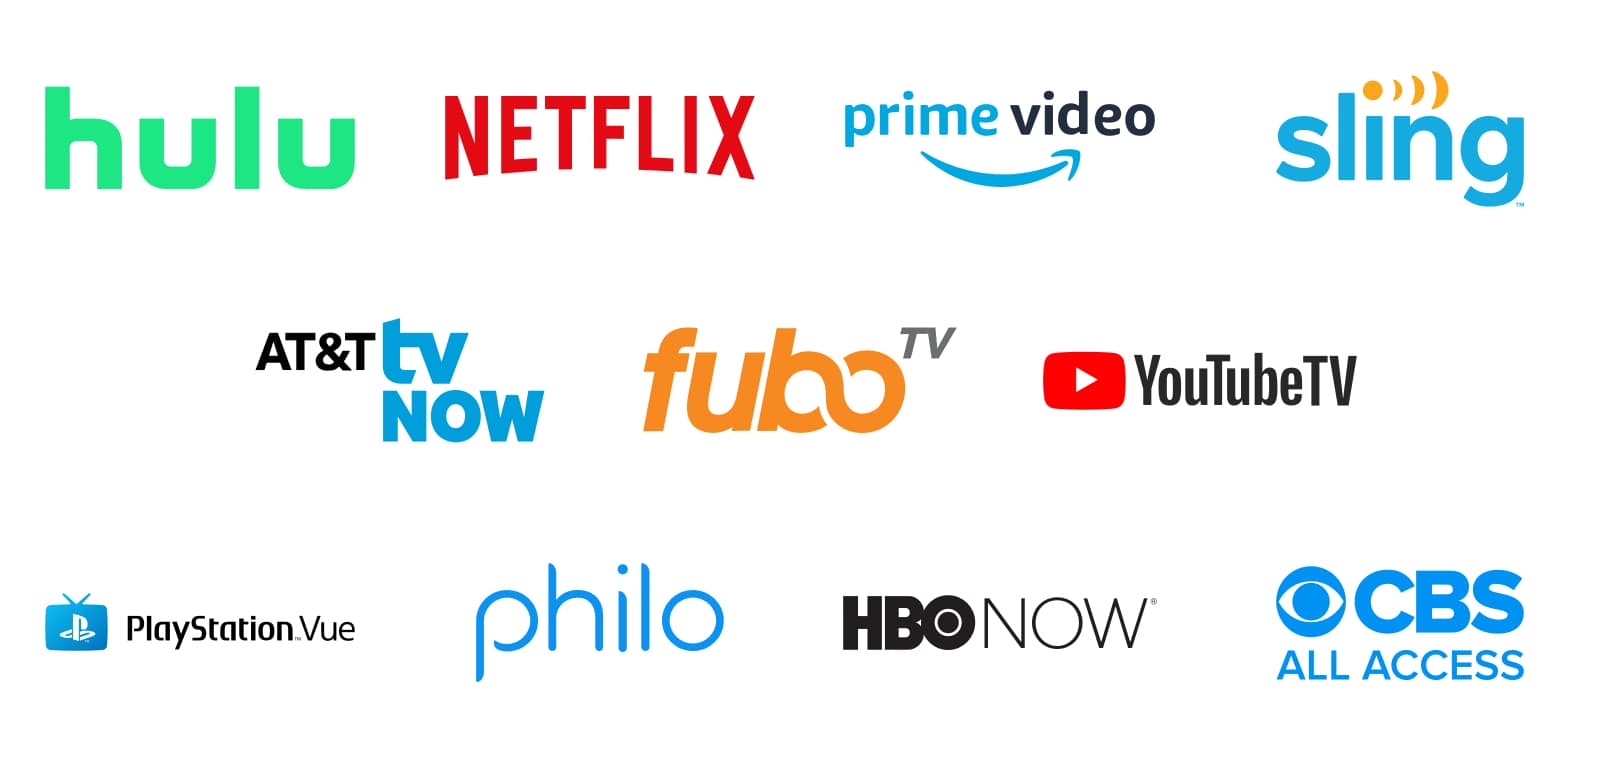 Streaming T V Provider Logos